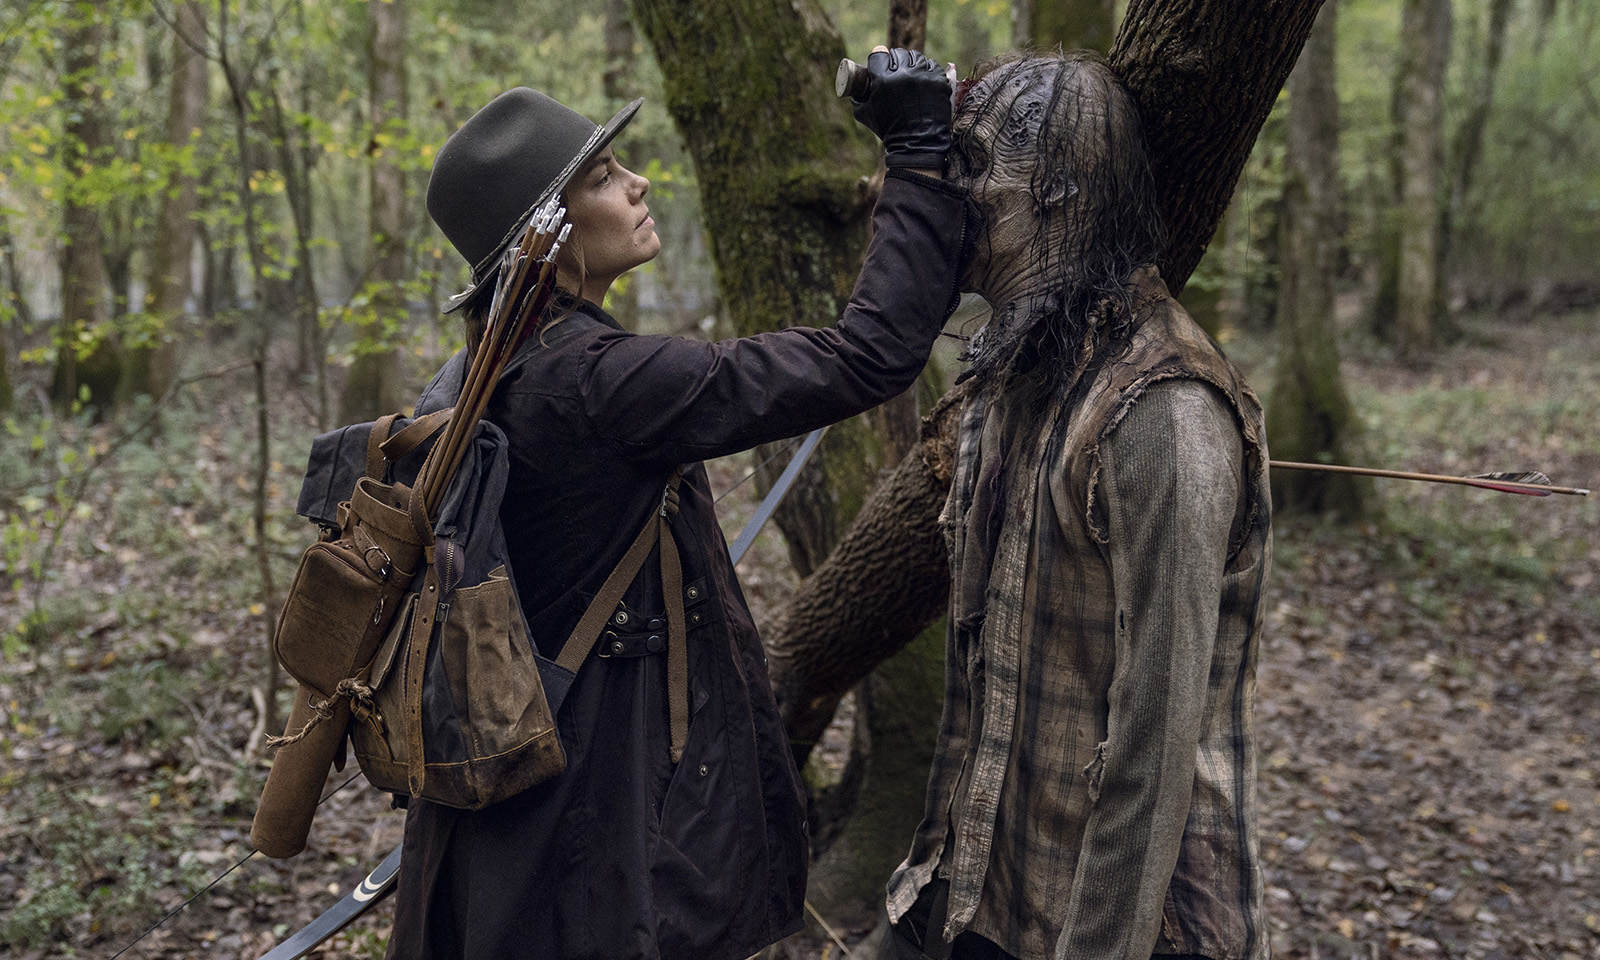 Maggie matando um zumbi com uma facada na cabeça em imagem dos episódios extras da 10ª temporada de The Walking Dead